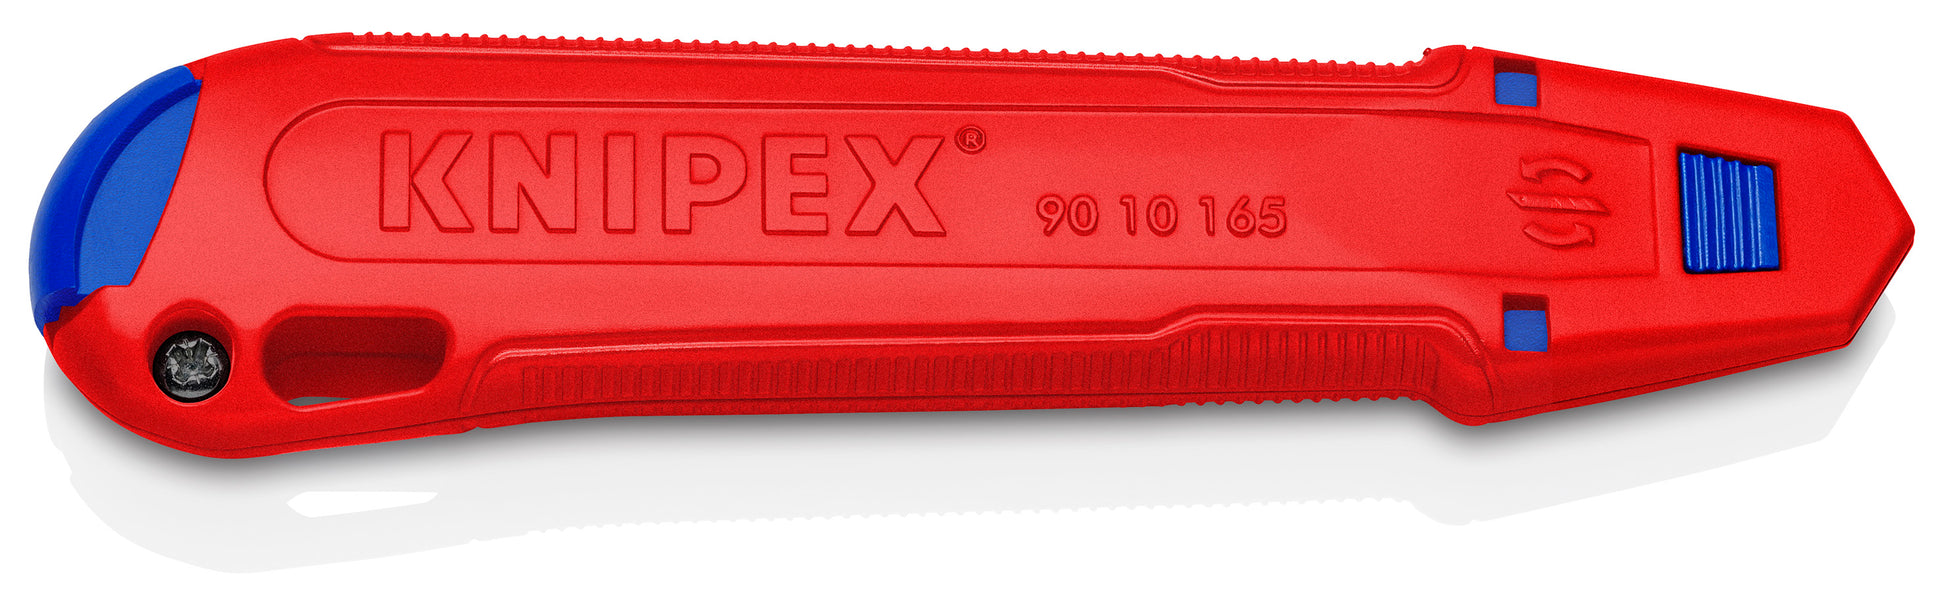 knipex cutix® universal knife 90 10 165 bka